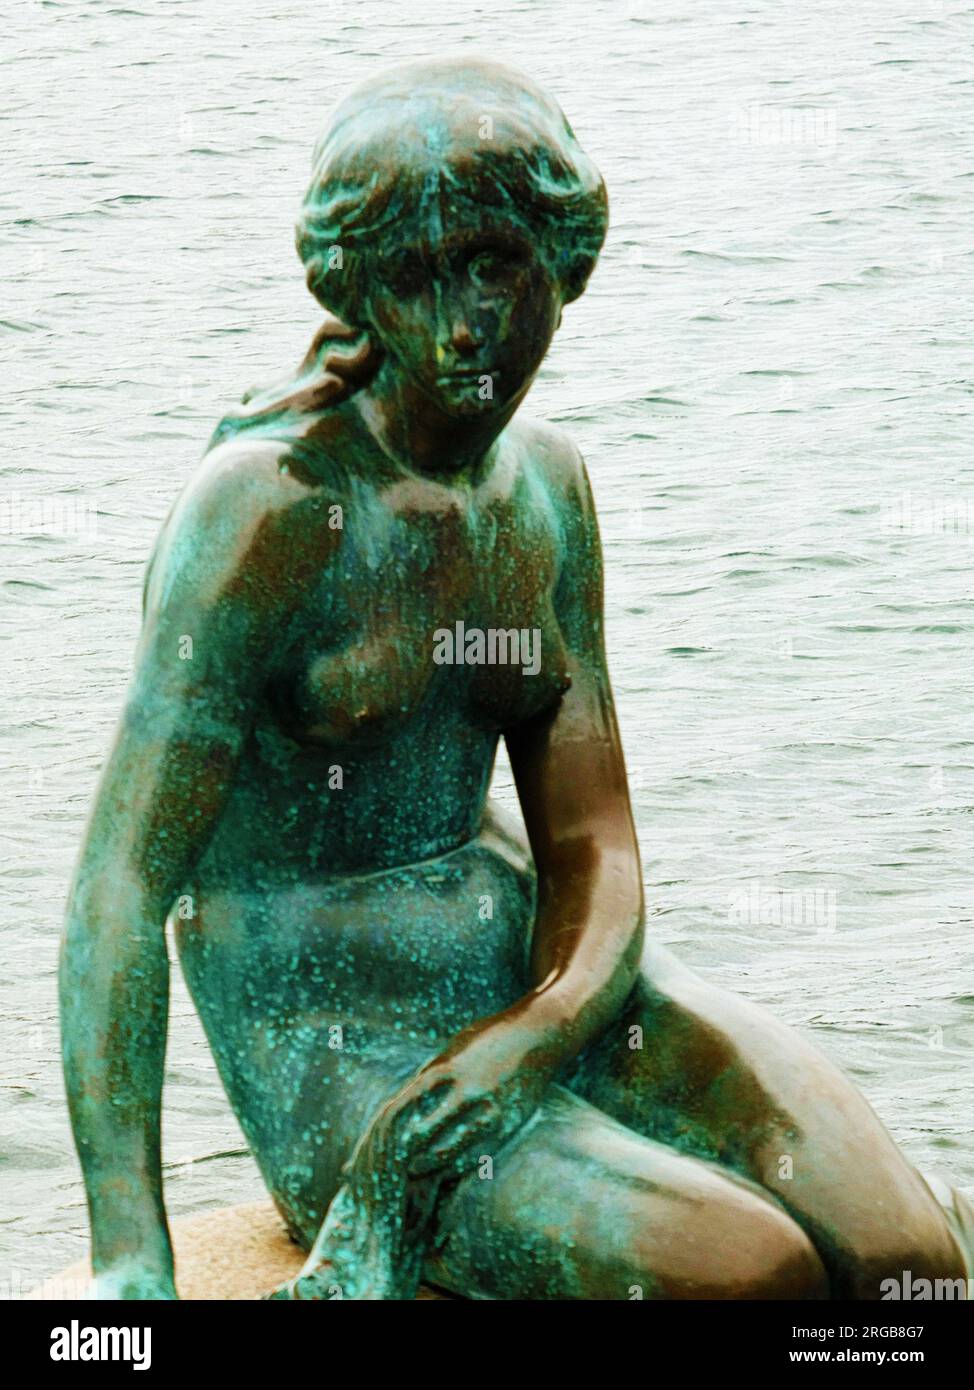 Kopenhagen, Dänemark - Nahaufnahme der berühmten Statue der kleinen Meerjungfrau aus dem Jahr 1913 auf einem Felsen am Eingang des Kopenhagener Hafens, Symbol der dänischen capi Stockfoto